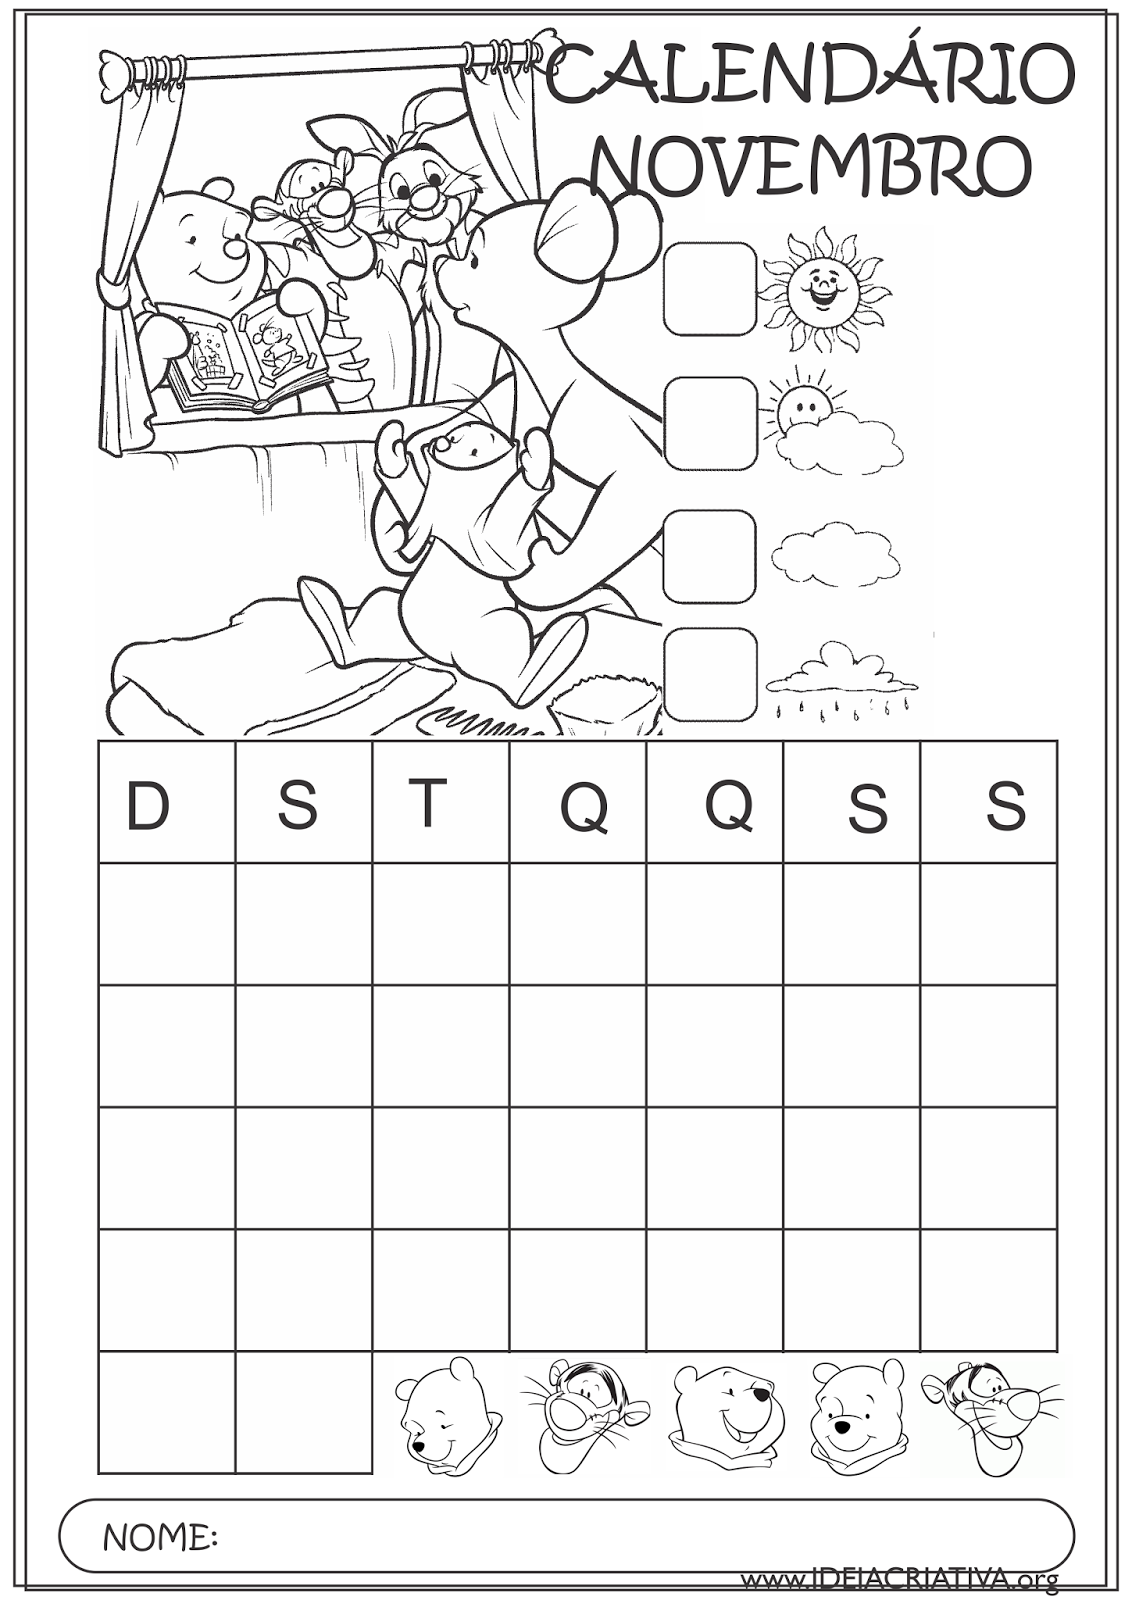 Calendários Novembro 2015 Turma do Pooh para Colorir Educação Infantil